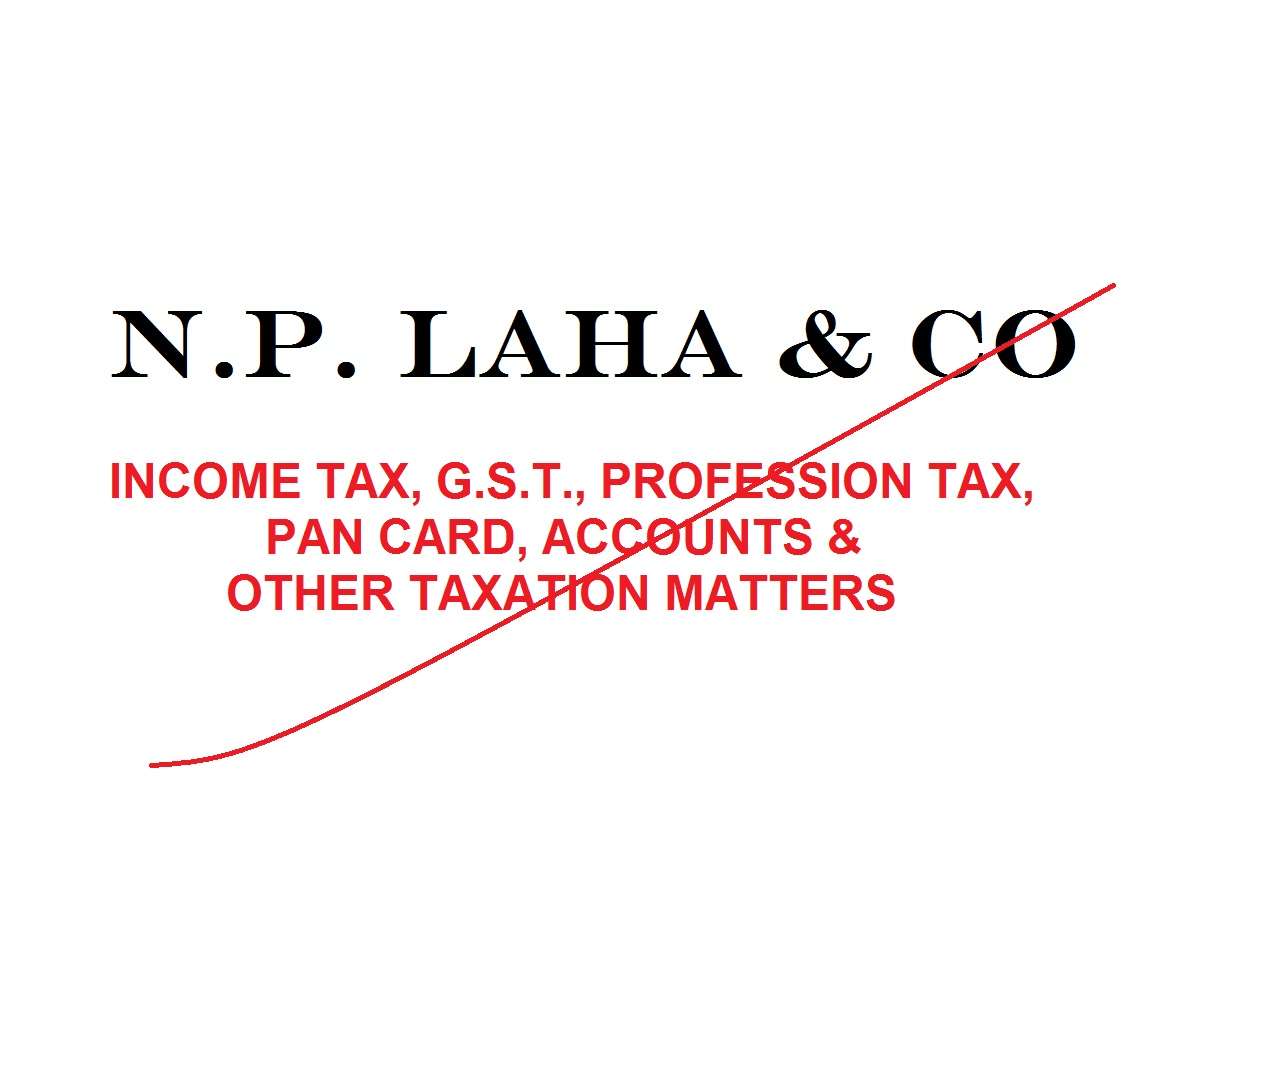 N.p. Laha & Co.